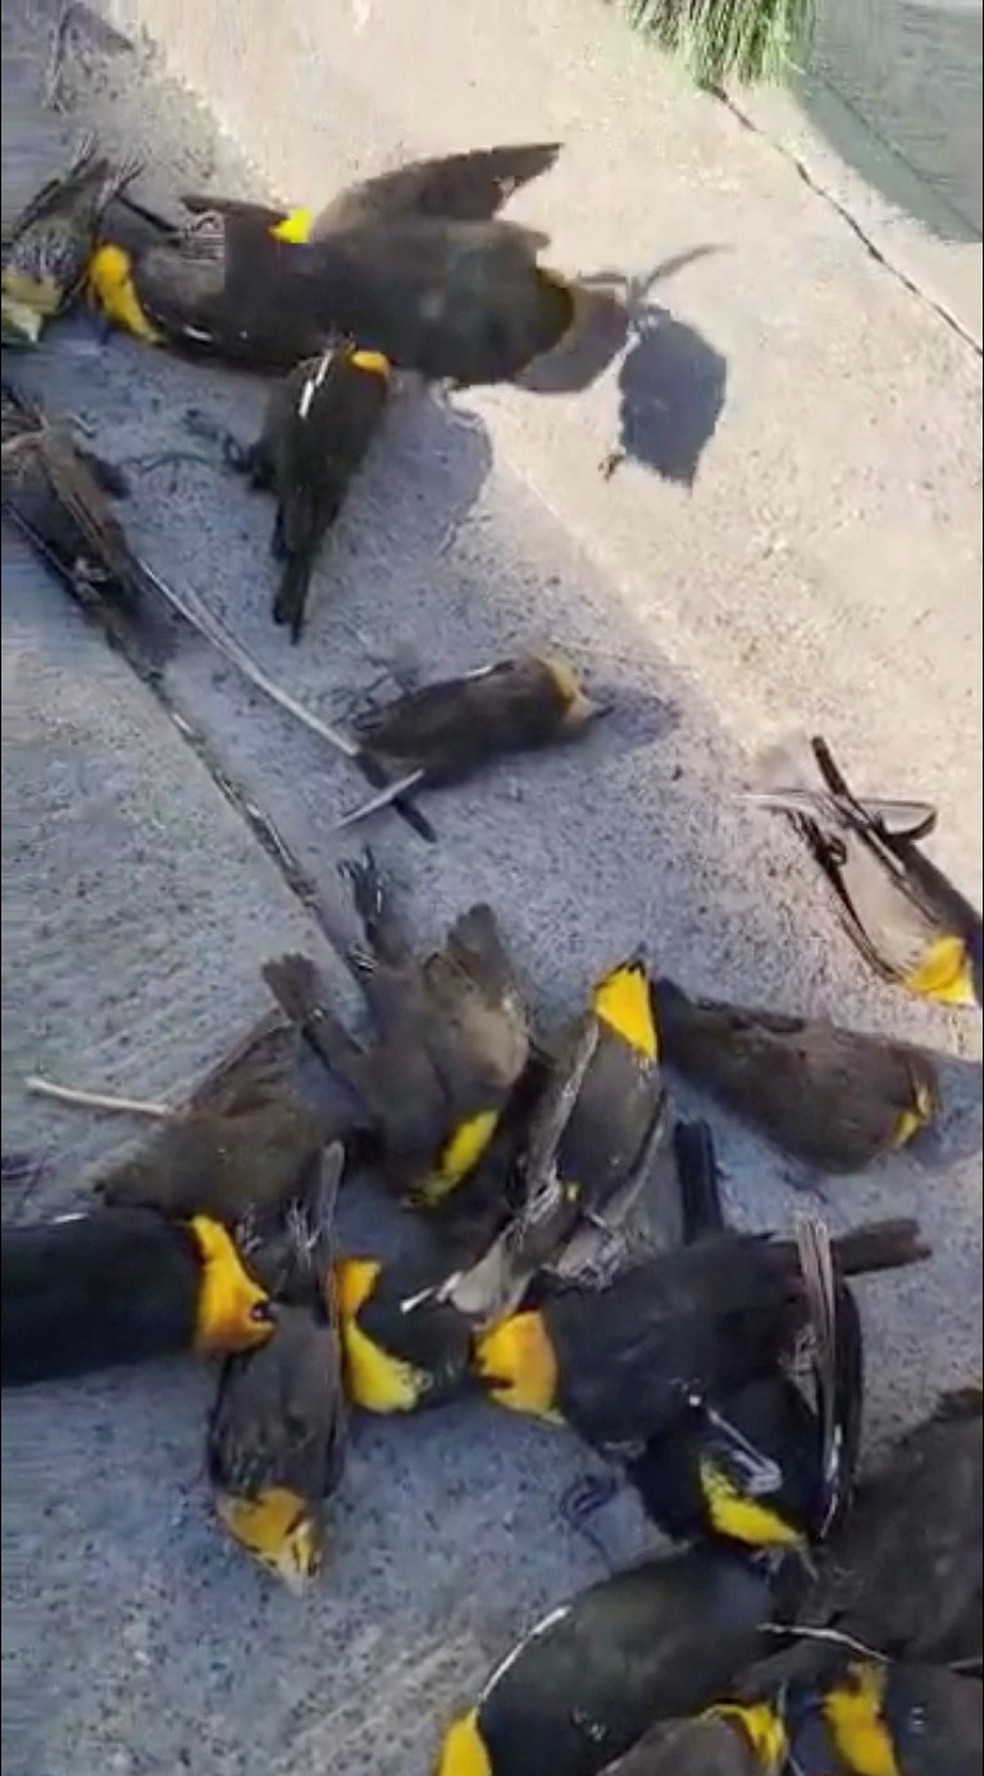 Pássaros mortos no chão após revoada de bando em cidade do México — Foto: Cortesia/Polícia de Chihuahua